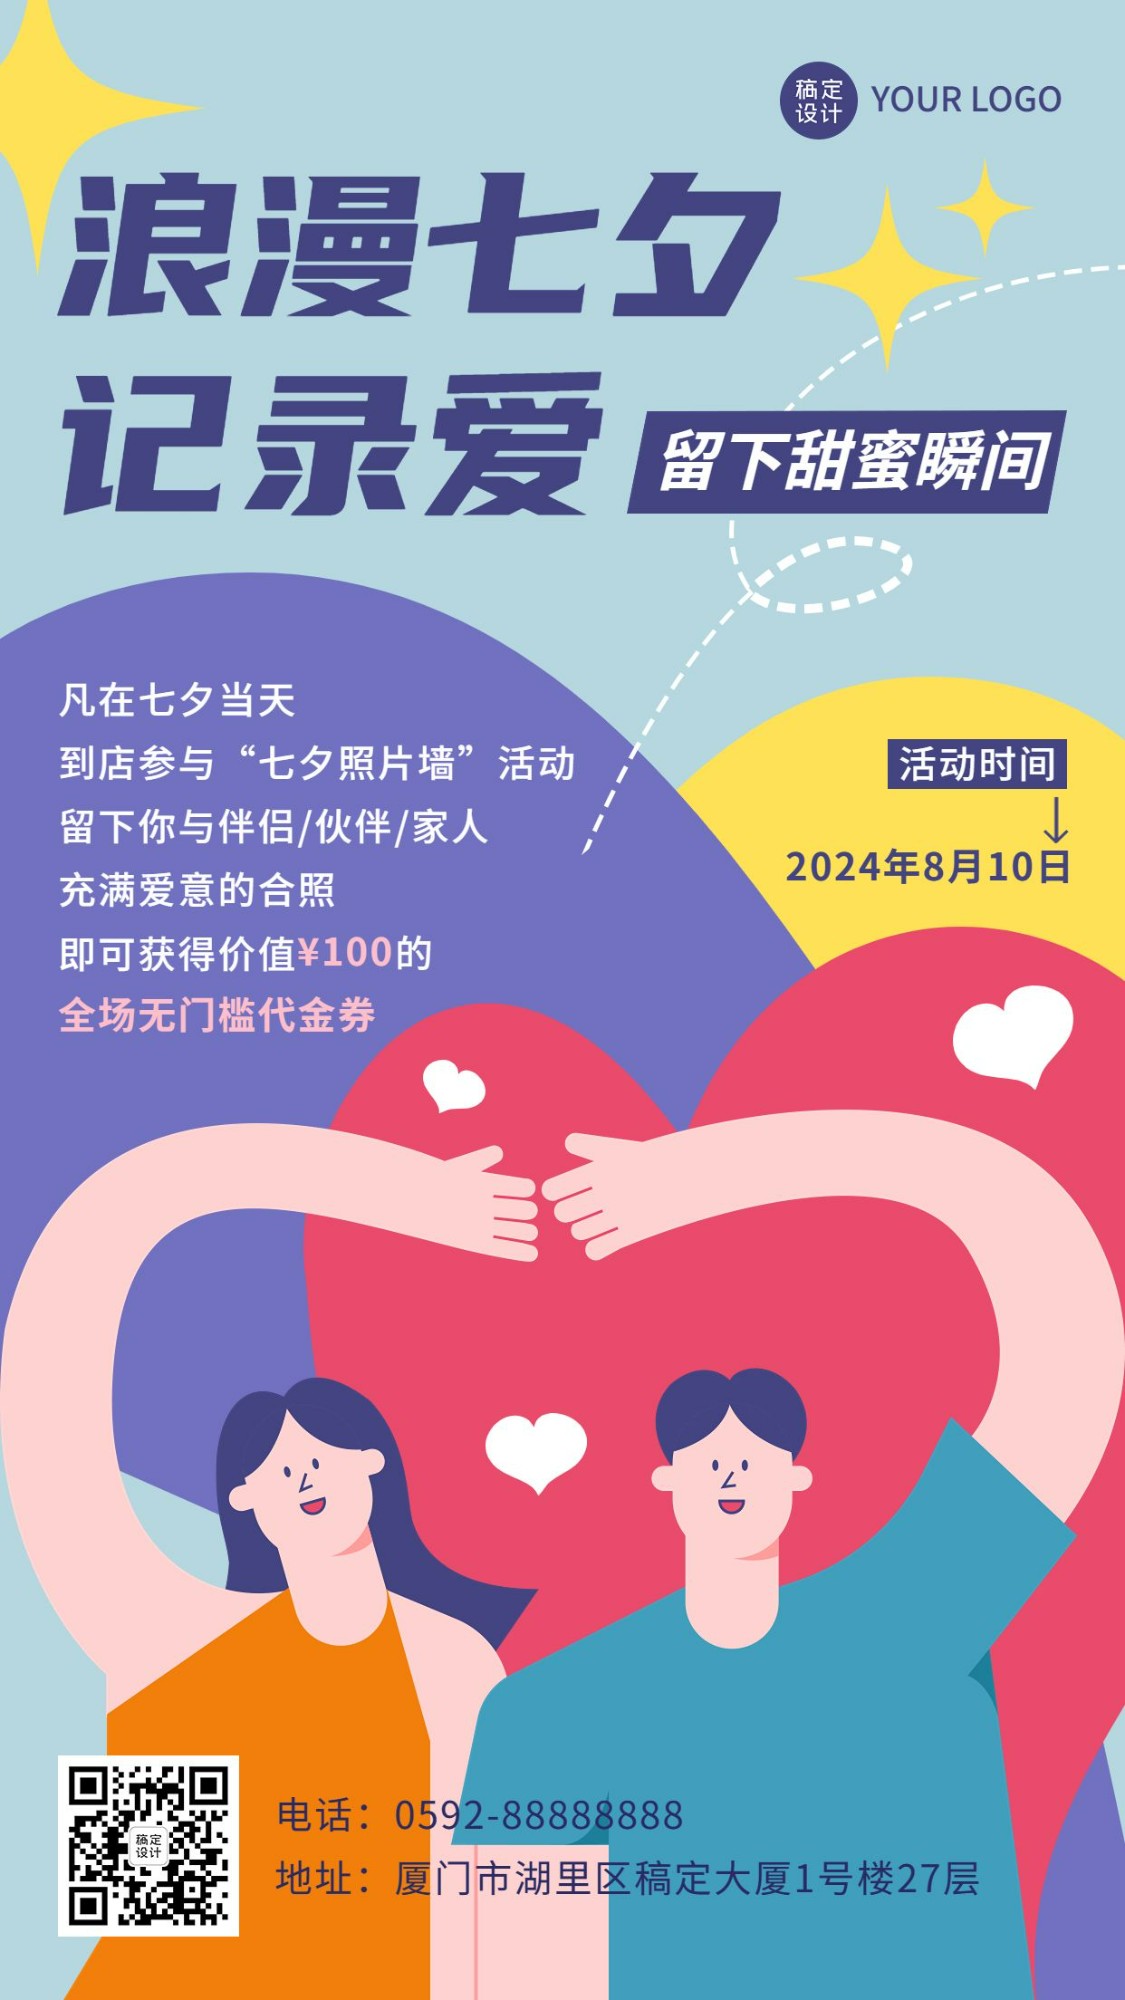 七夕情人节节日活动通知公告创意手机海报